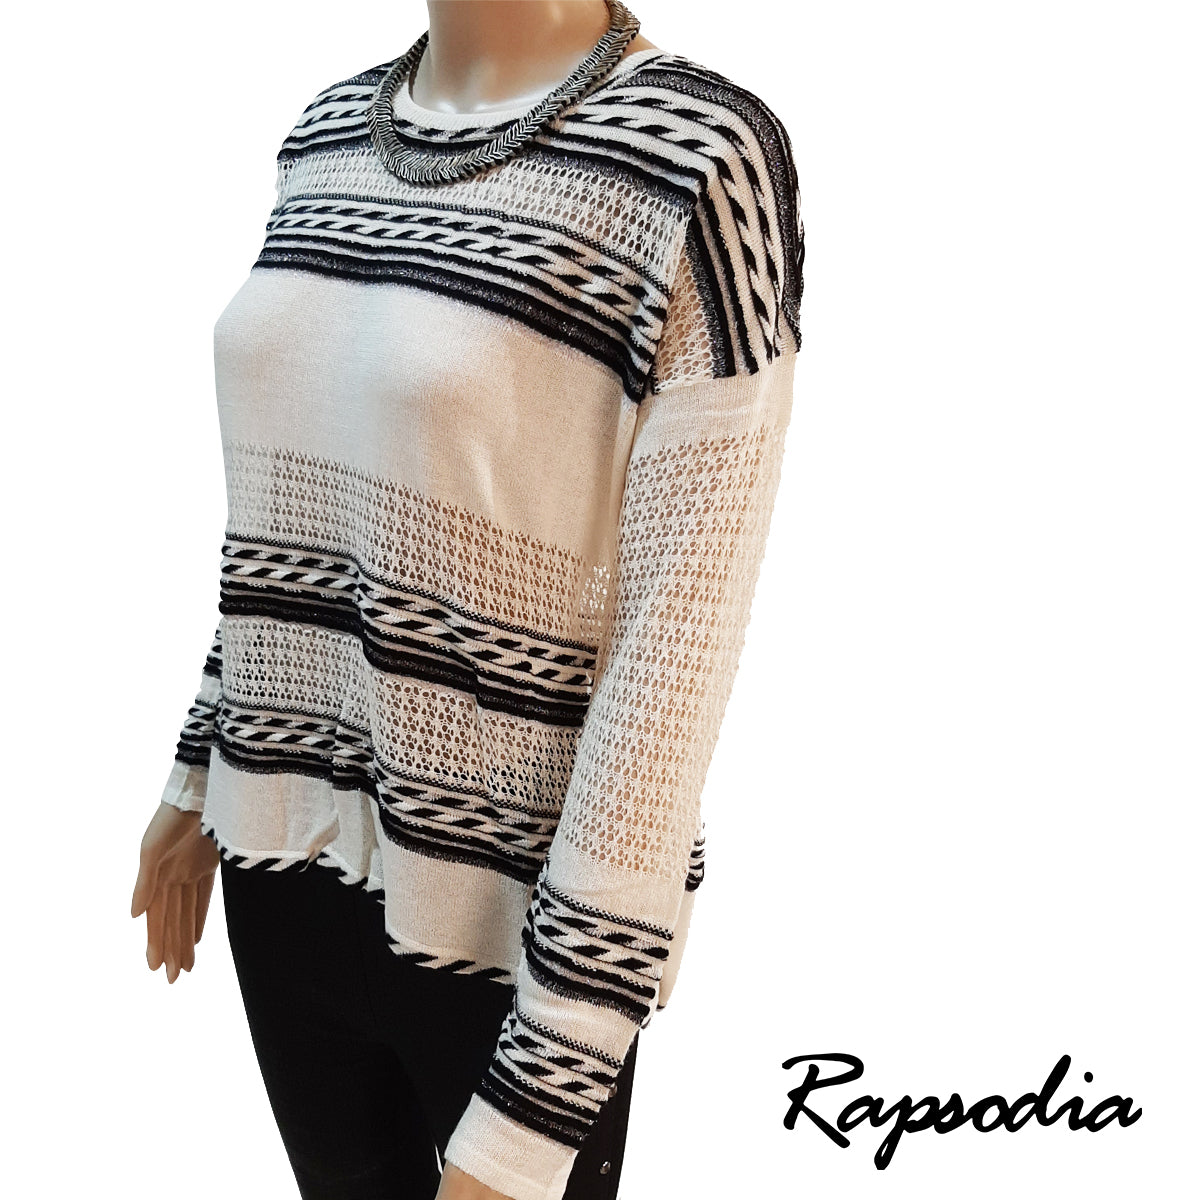 Sweater Rapsodia Magnolia Plata